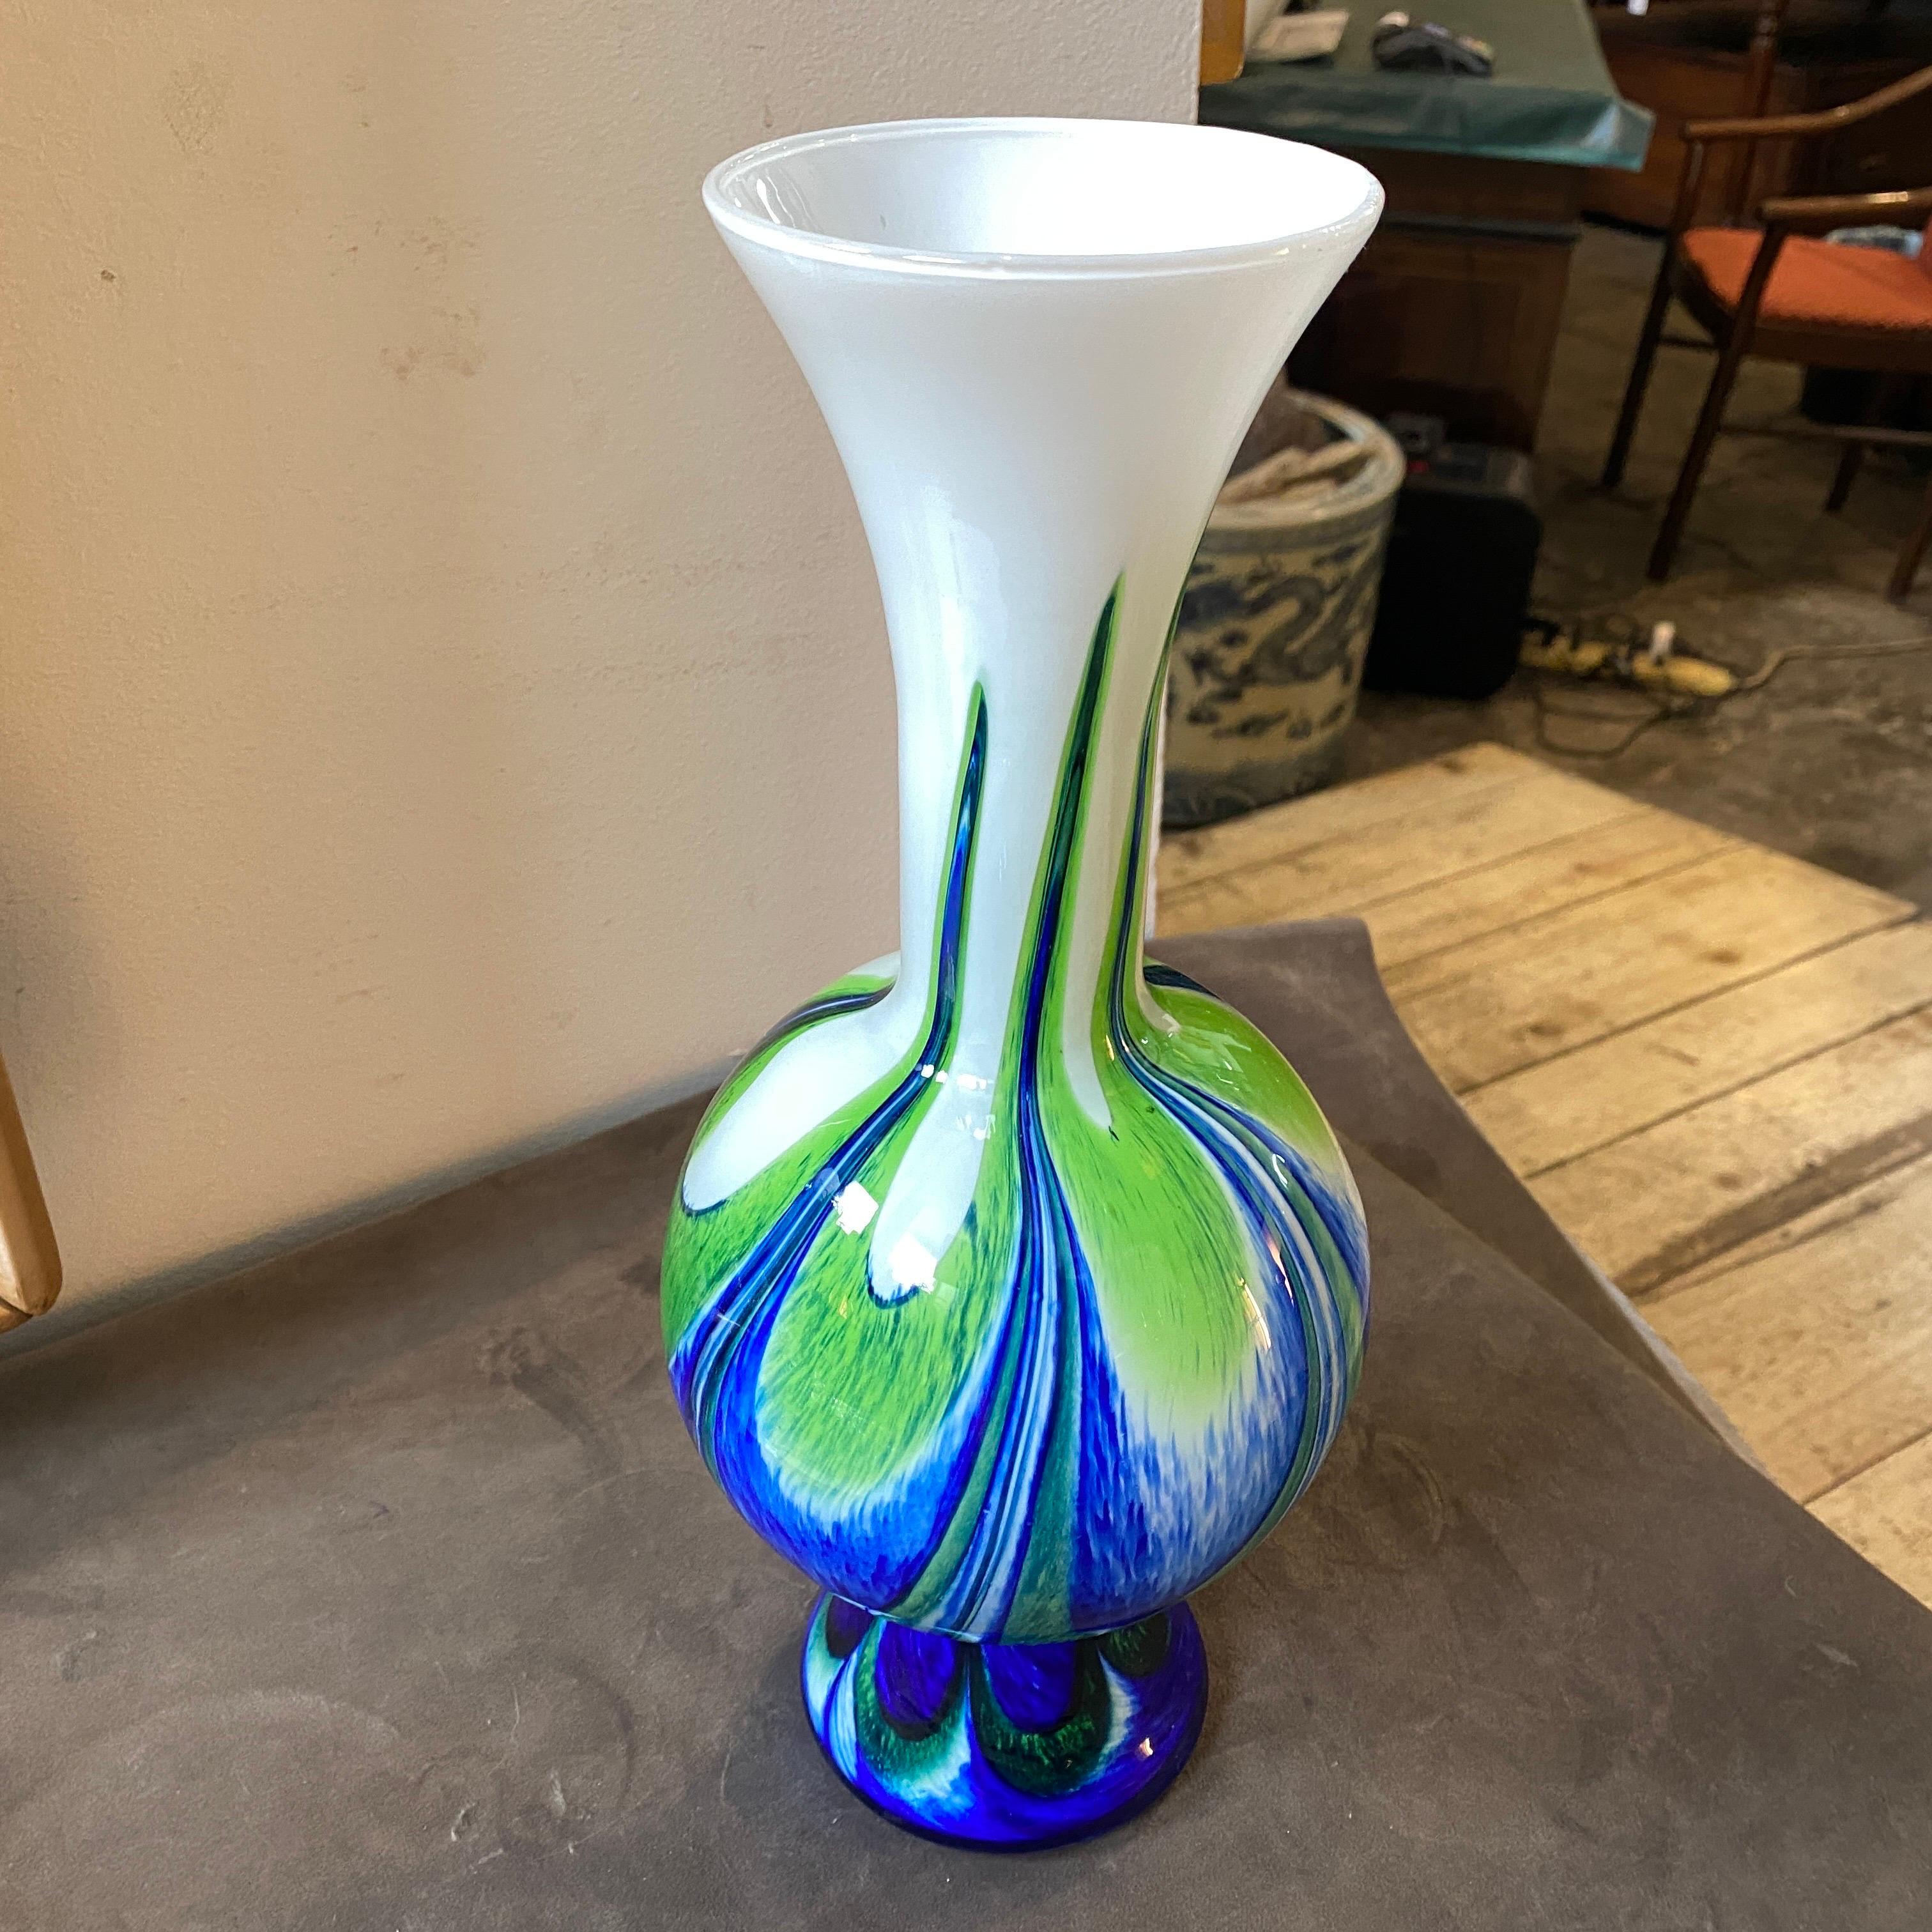 Un rare vase en verre opalin bleu et vert fabriqué en Italie dans les années 70 par Opaline Florence. Chaque vase est différent des autres. Le vase est en parfait état.